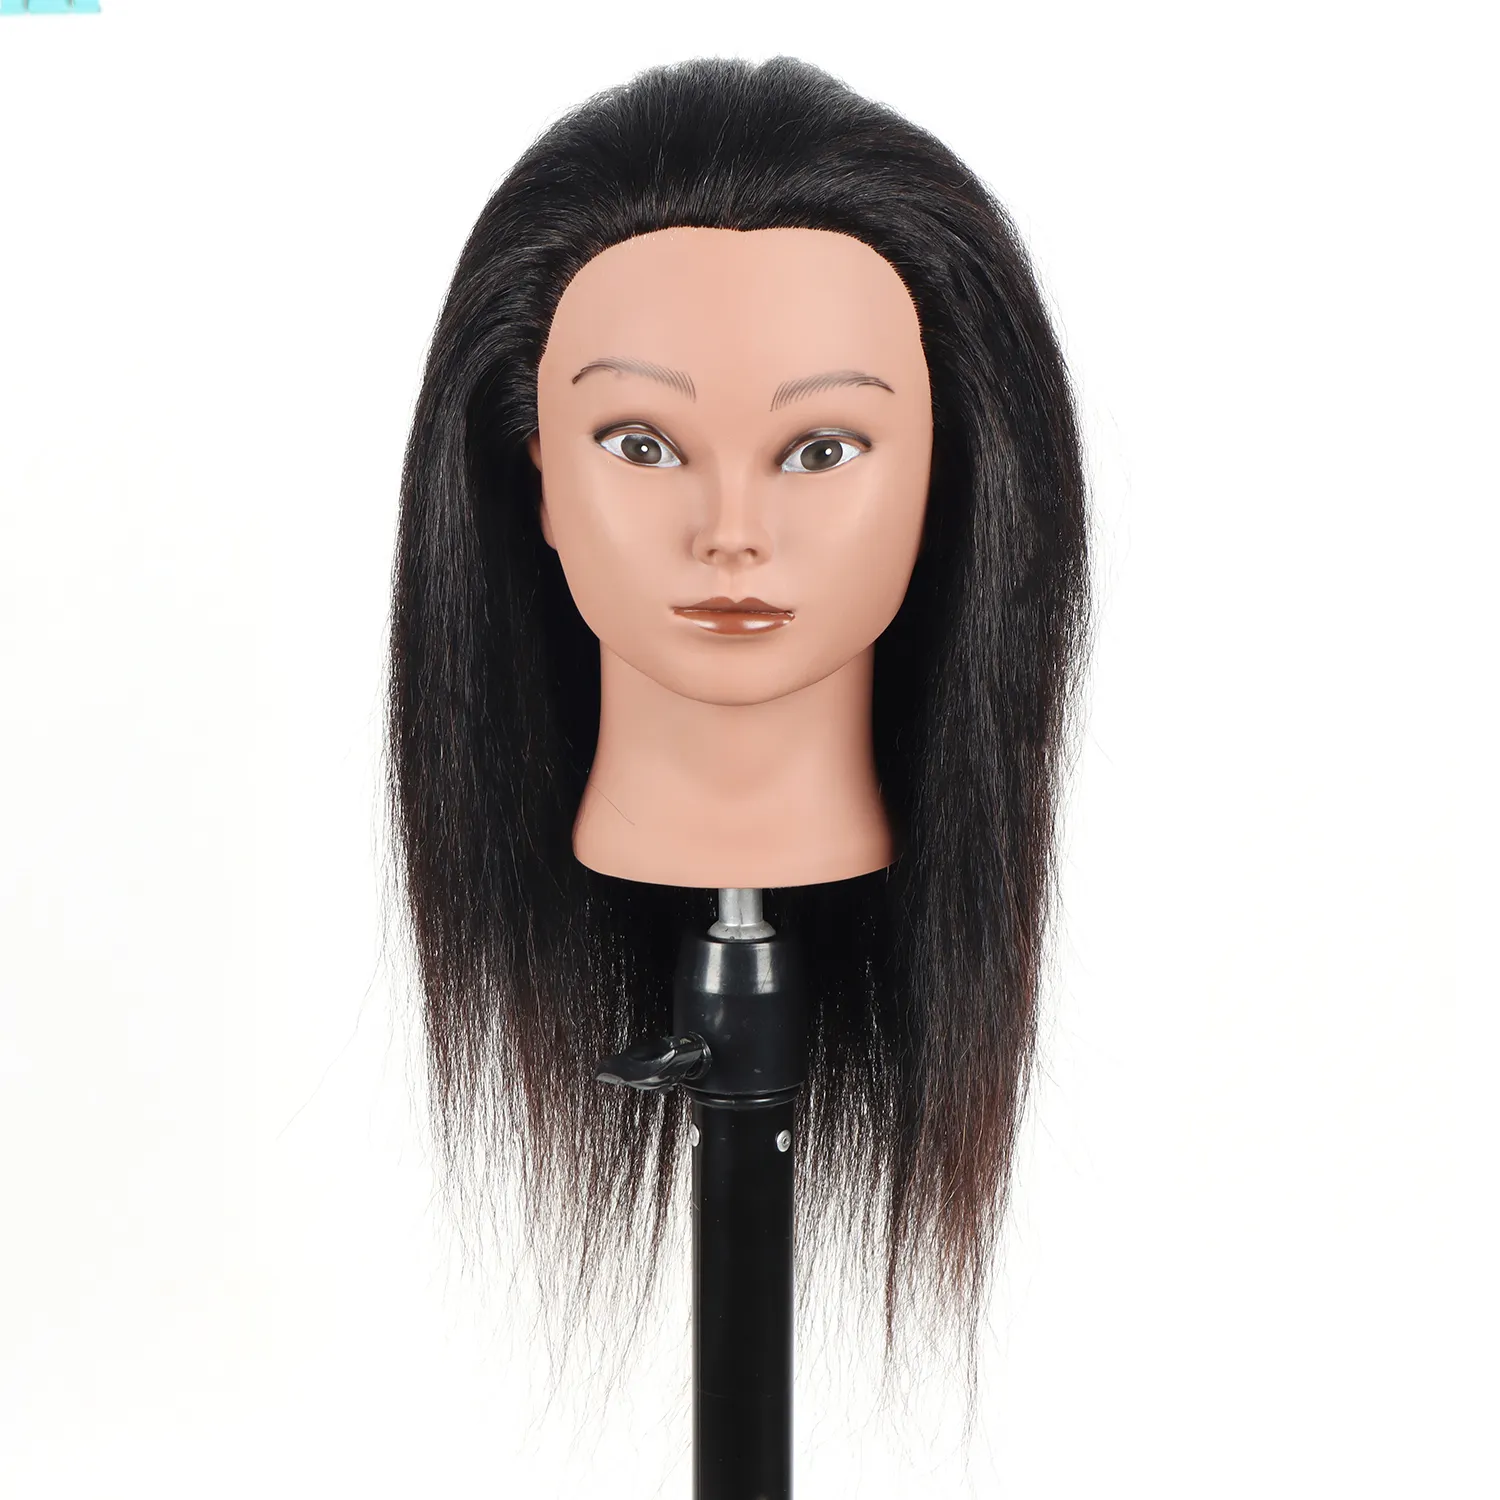 Оптовая продажа, голова манекена с натуральными волосами, голова манекена с синтетическими волосами для тренировок, голова манекена с волосами